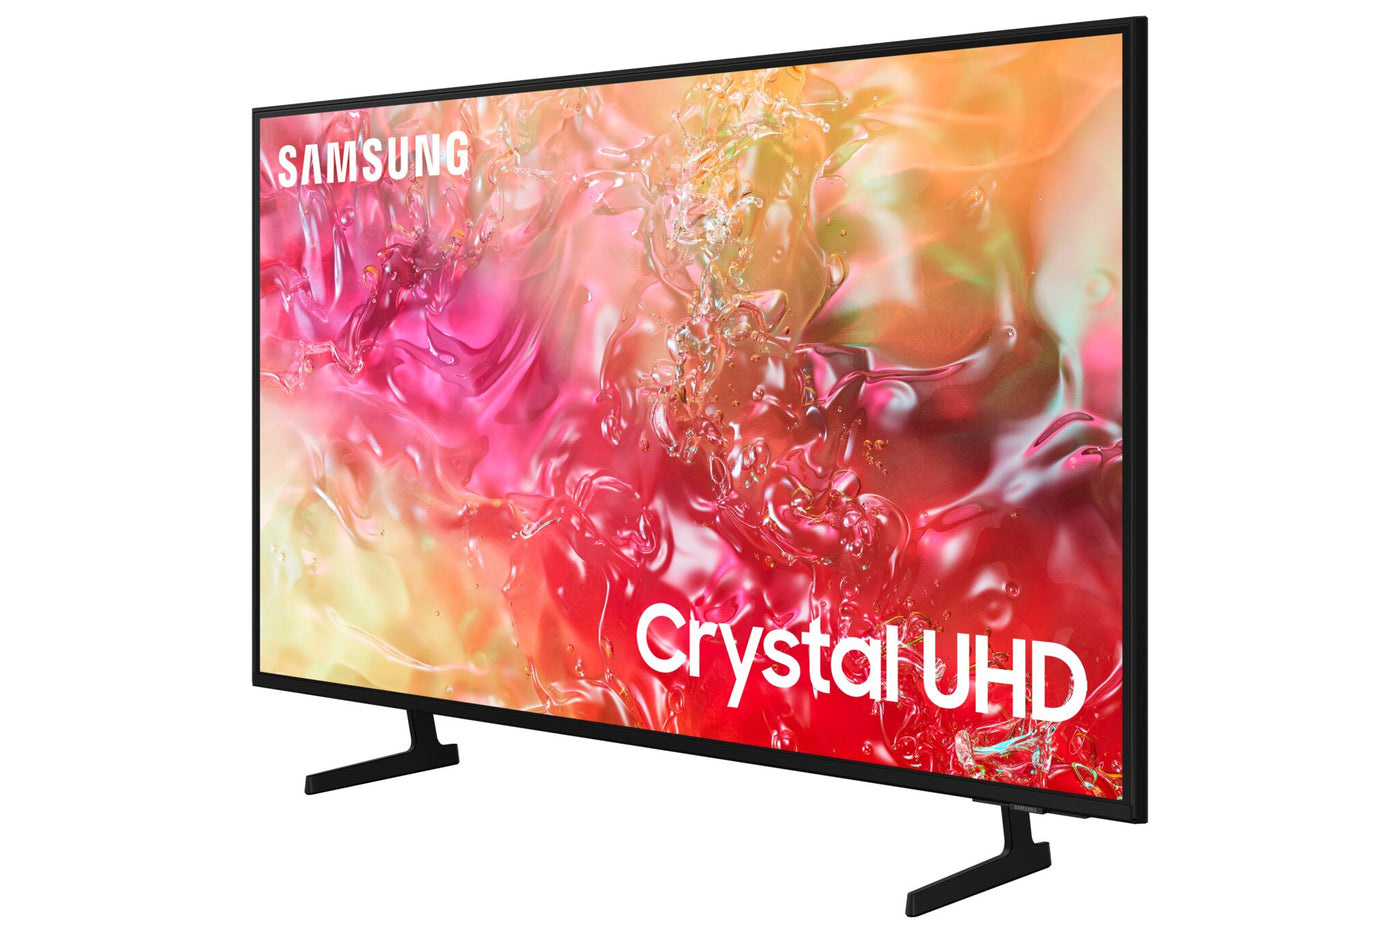 Samsung 55” 4K Tizen Smart CUHD TV - UN55DU7100FXZC